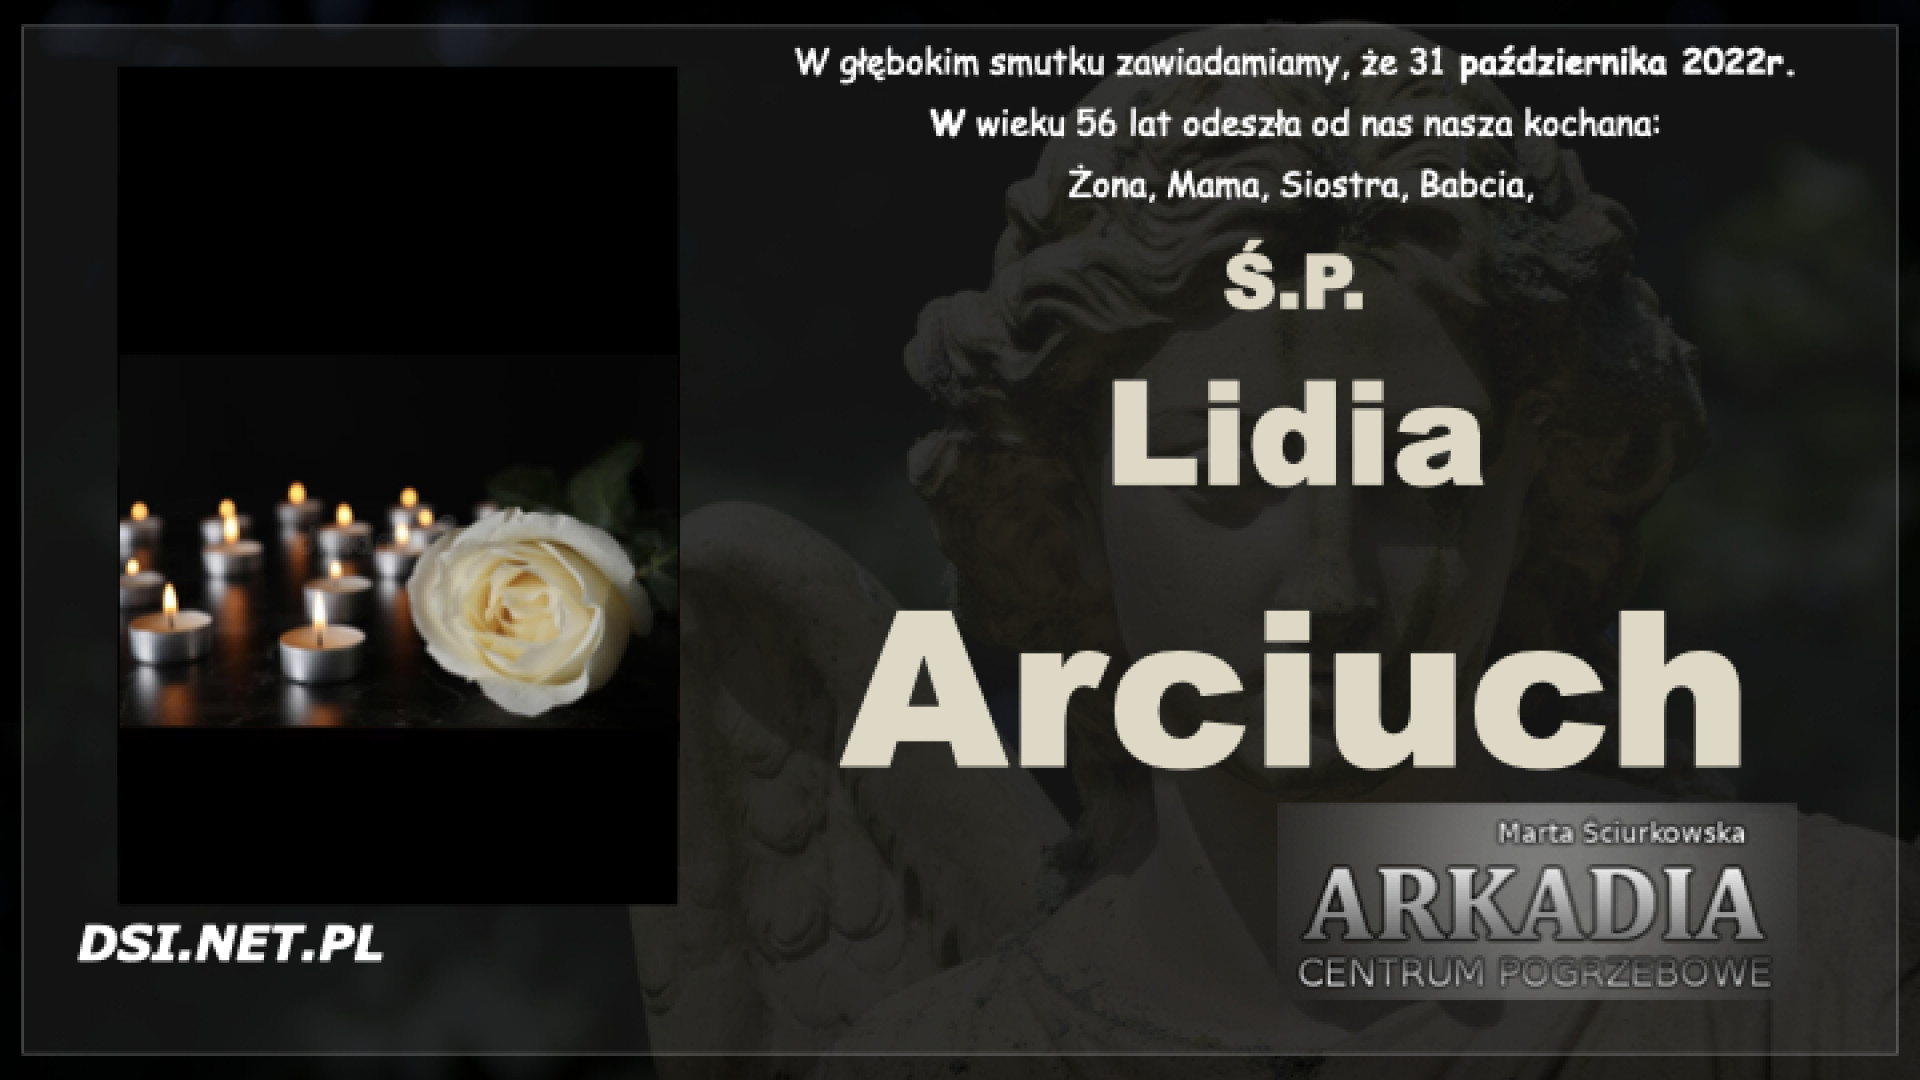 Ś.P. Lidia Arciuch